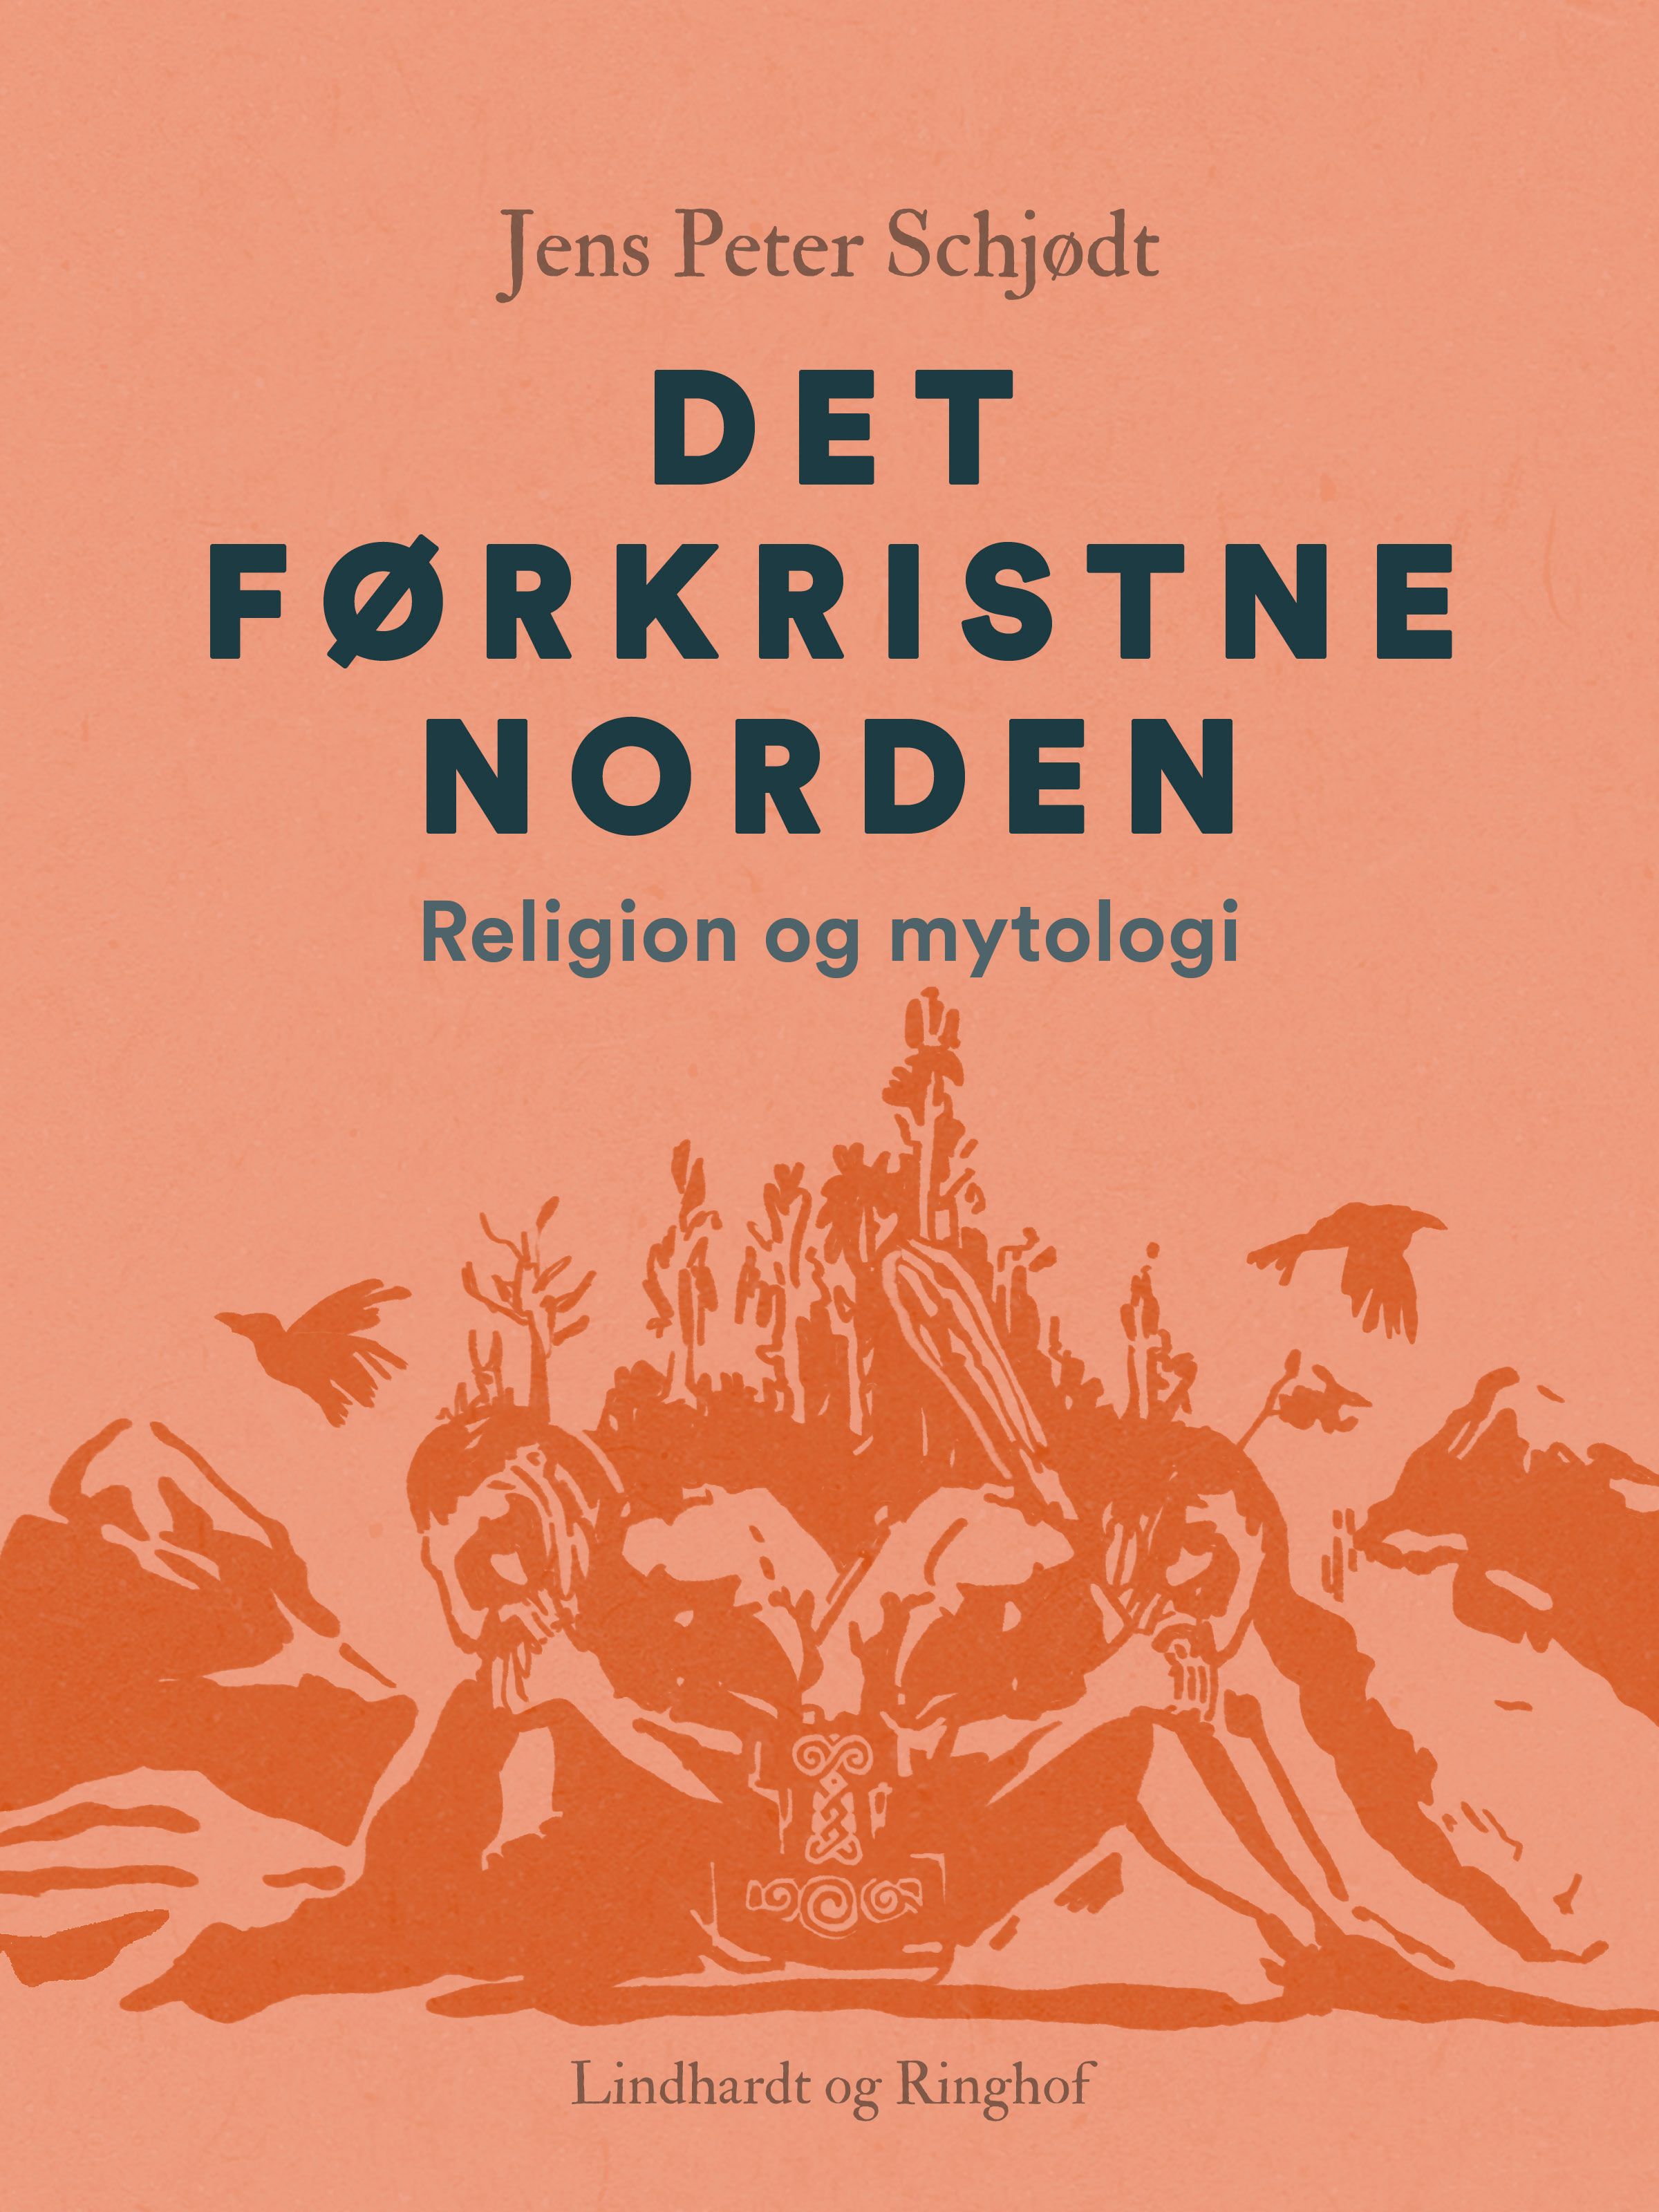 Det førkristne Norden. Religion og mytologi, e-bok av Jens Peter Schjødt